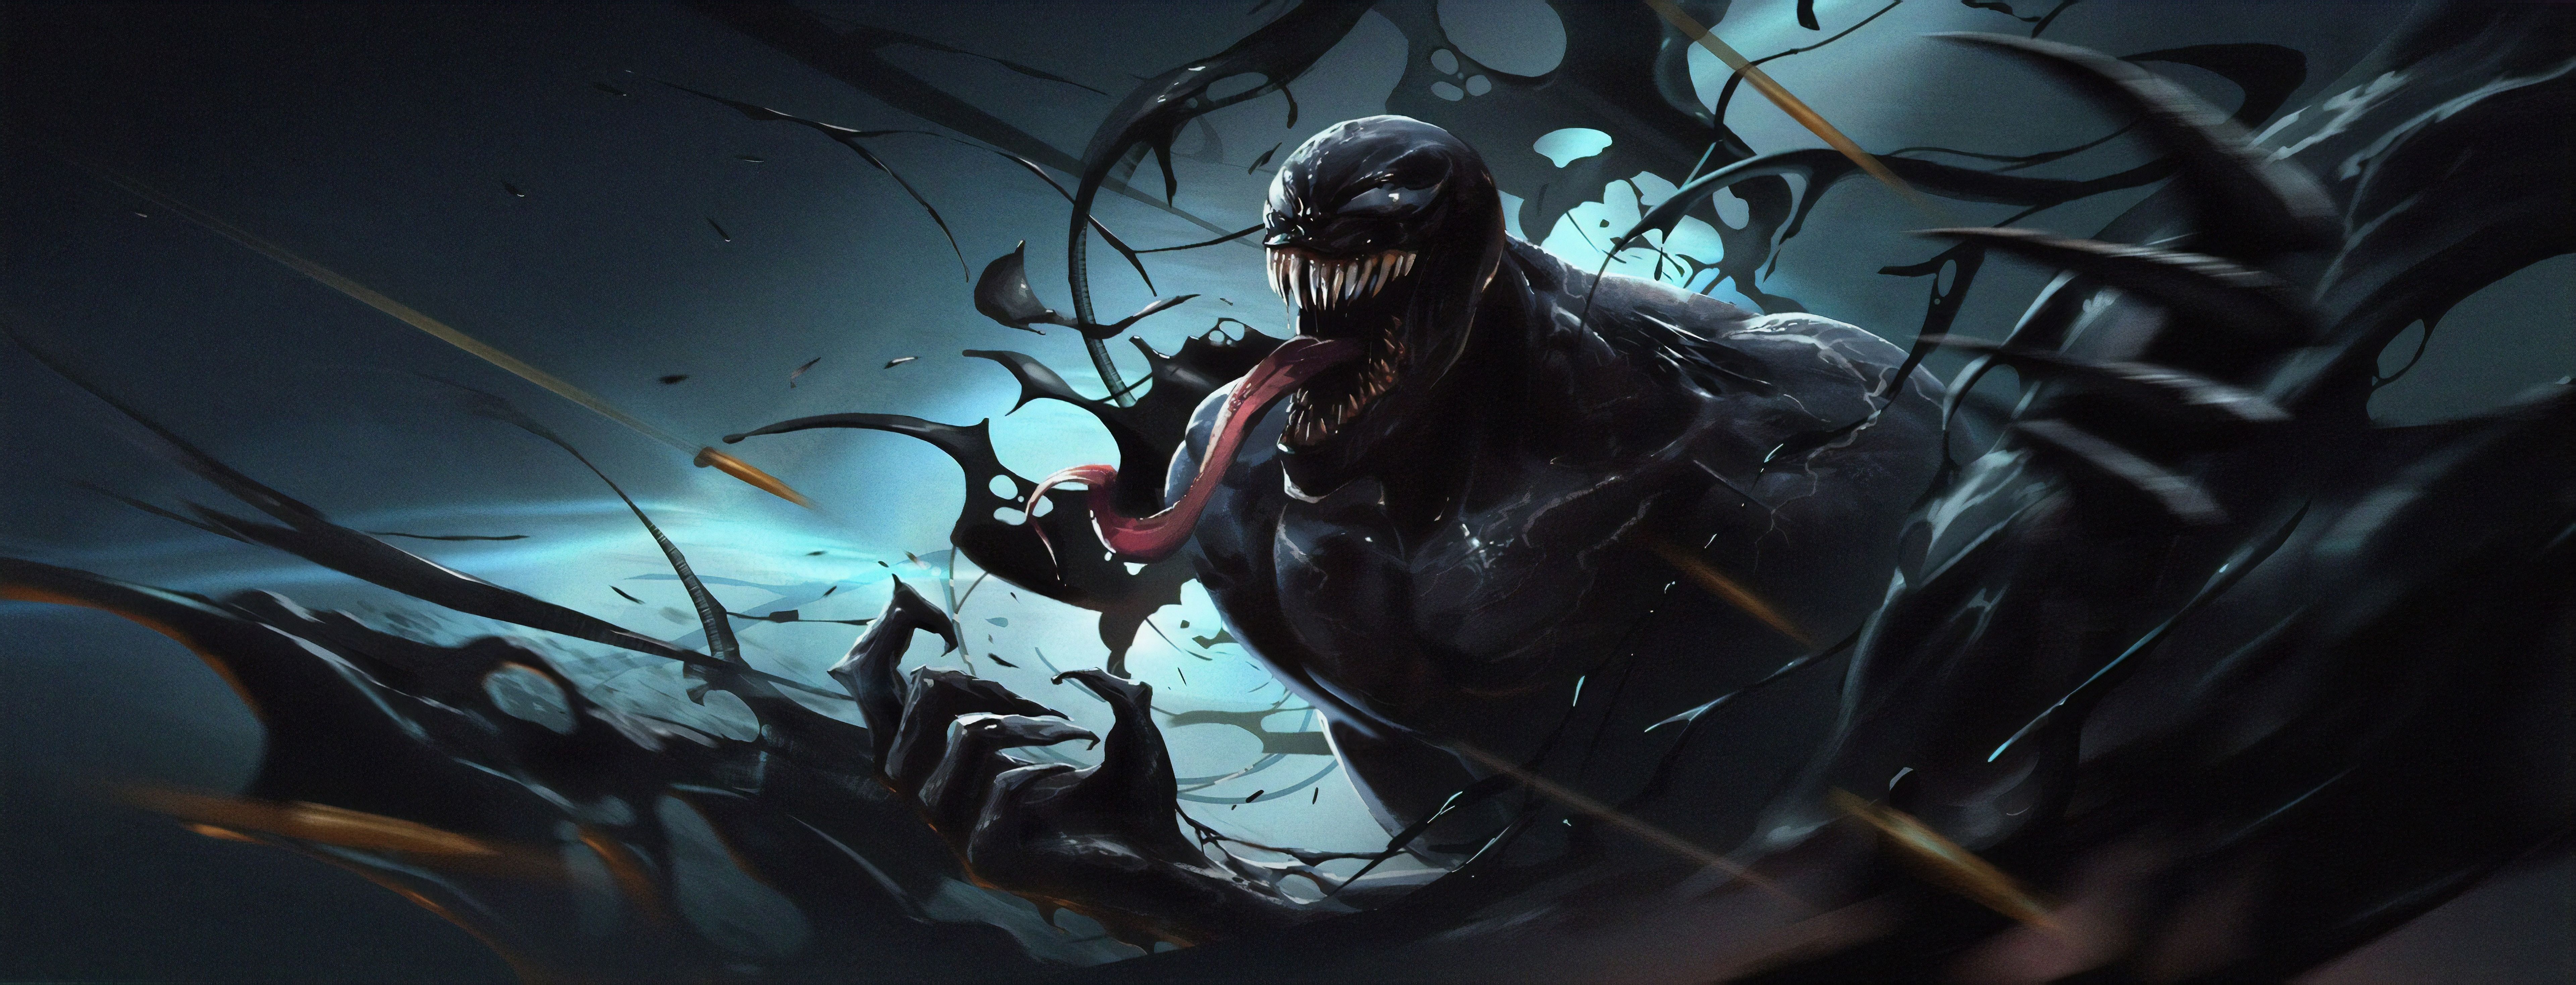 Bạn đang tìm kiếm những hình nền Venom tuyệt đẹp để tạo nên phong cách nổi bật cho máy tính hay điện thoại của mình? Đừng bỏ lỡ bộ sưu tập hình nền Venom đầy sức hút trên WallpaperDog! Hãy trang trí màn hình của bạn với những hình nền Venom đẹp mắt này ngay thôi!